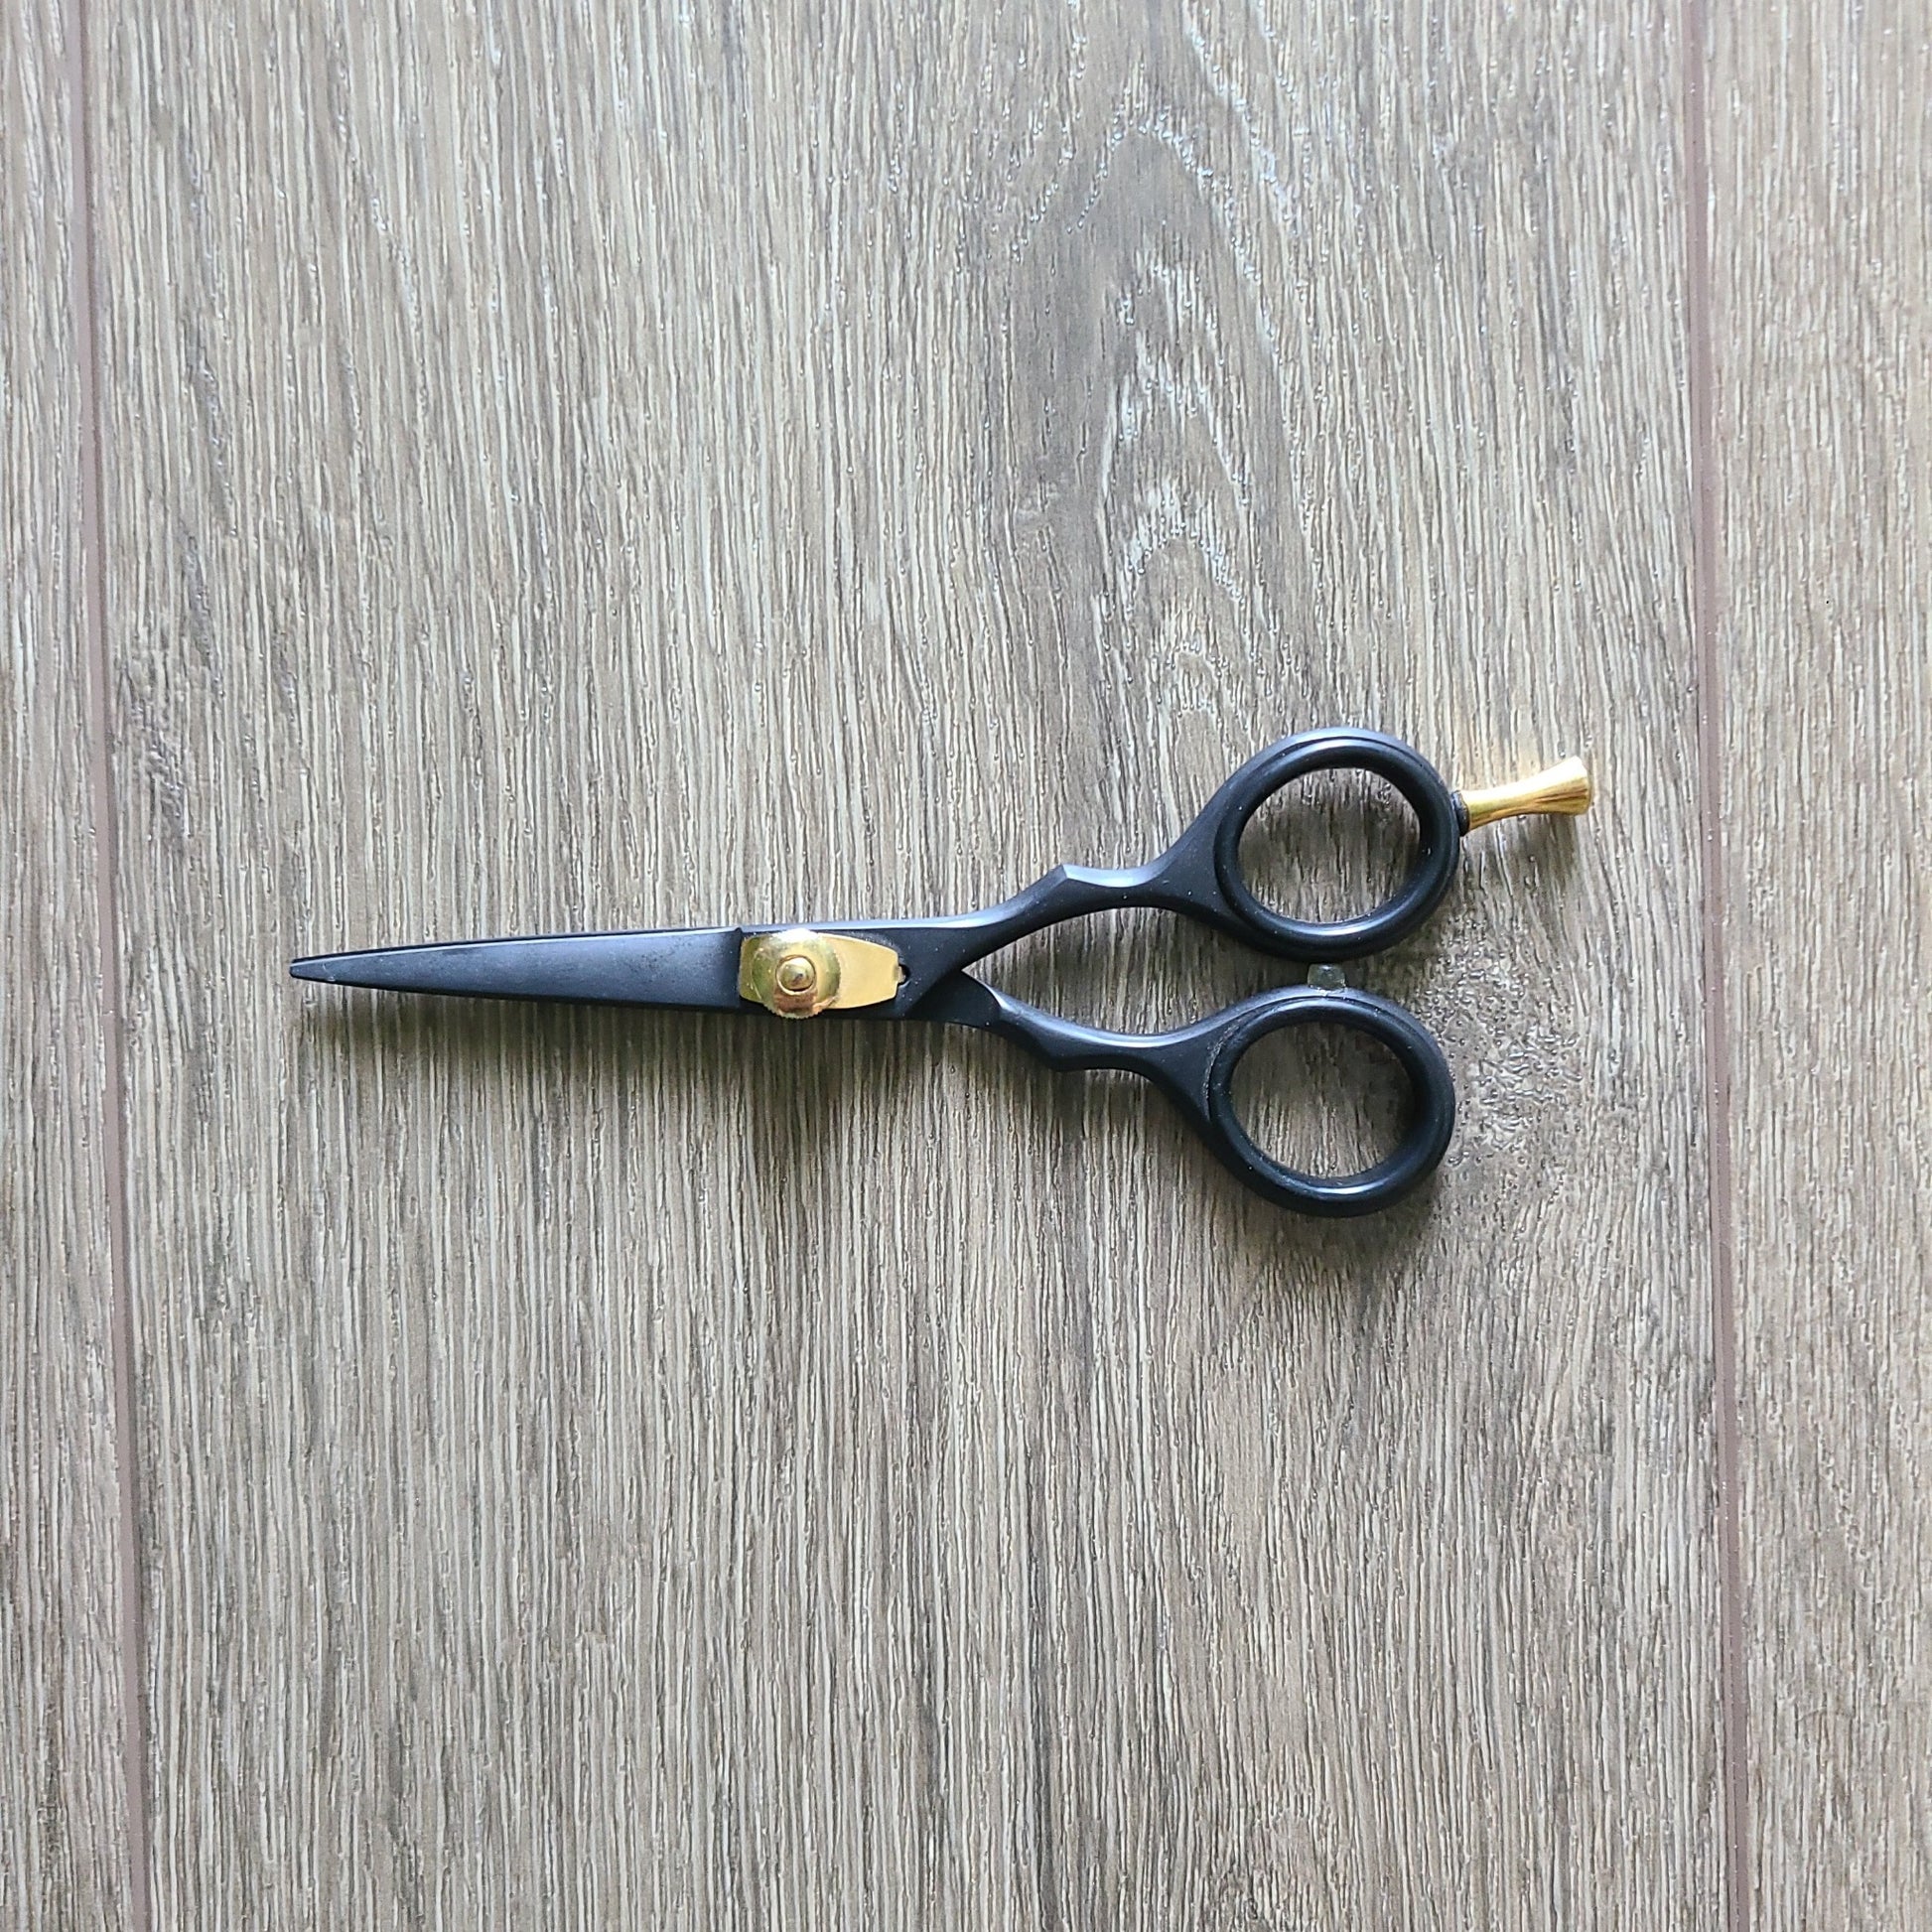 Five inch black beard scissors